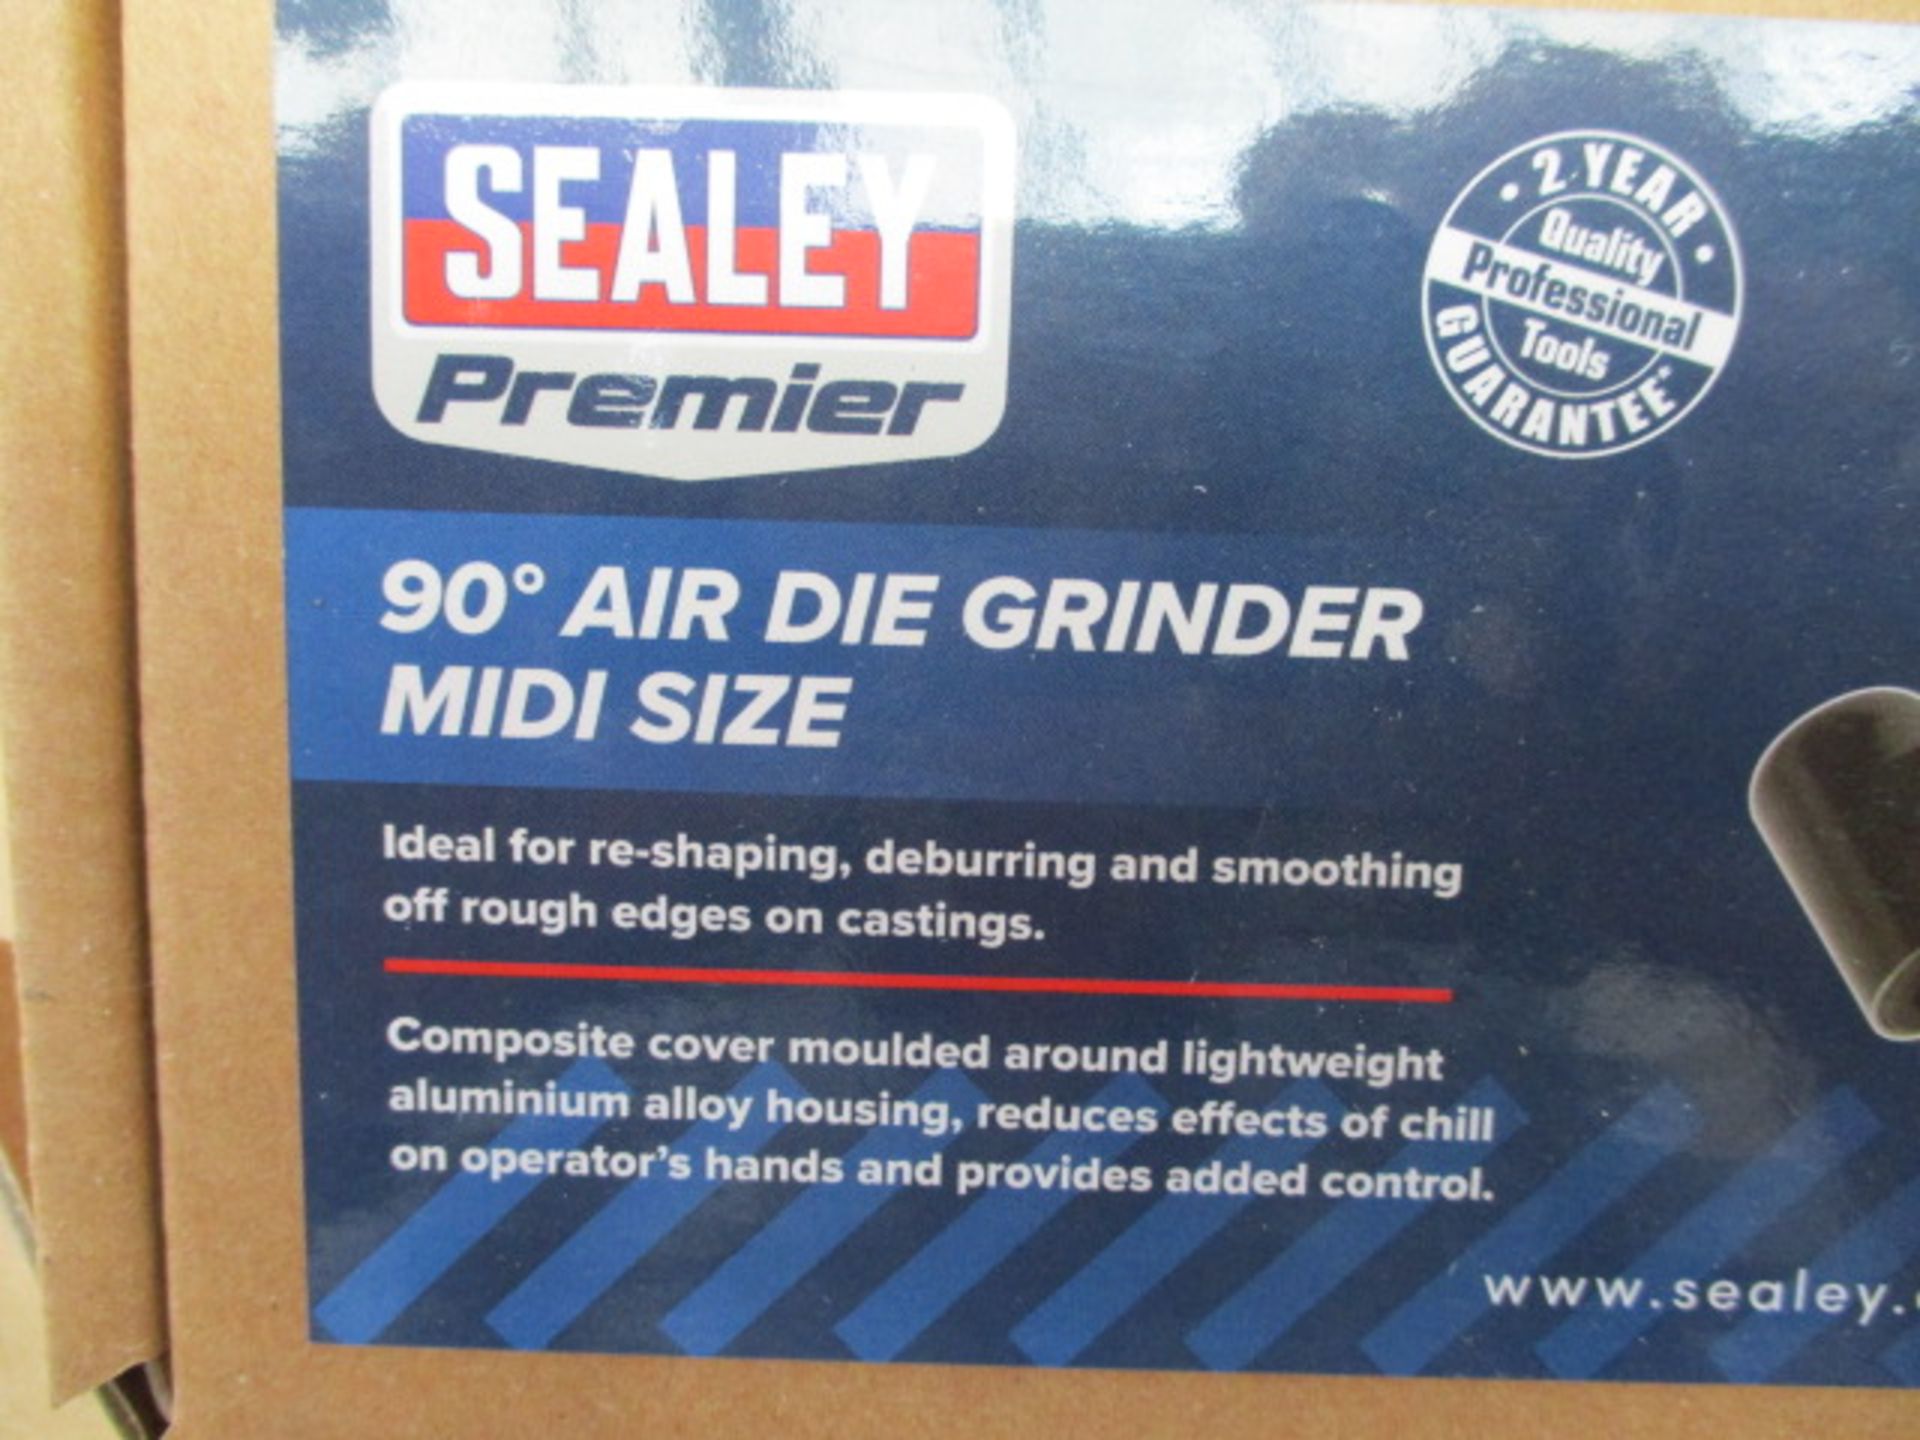 Air die grinder - Image 2 of 4